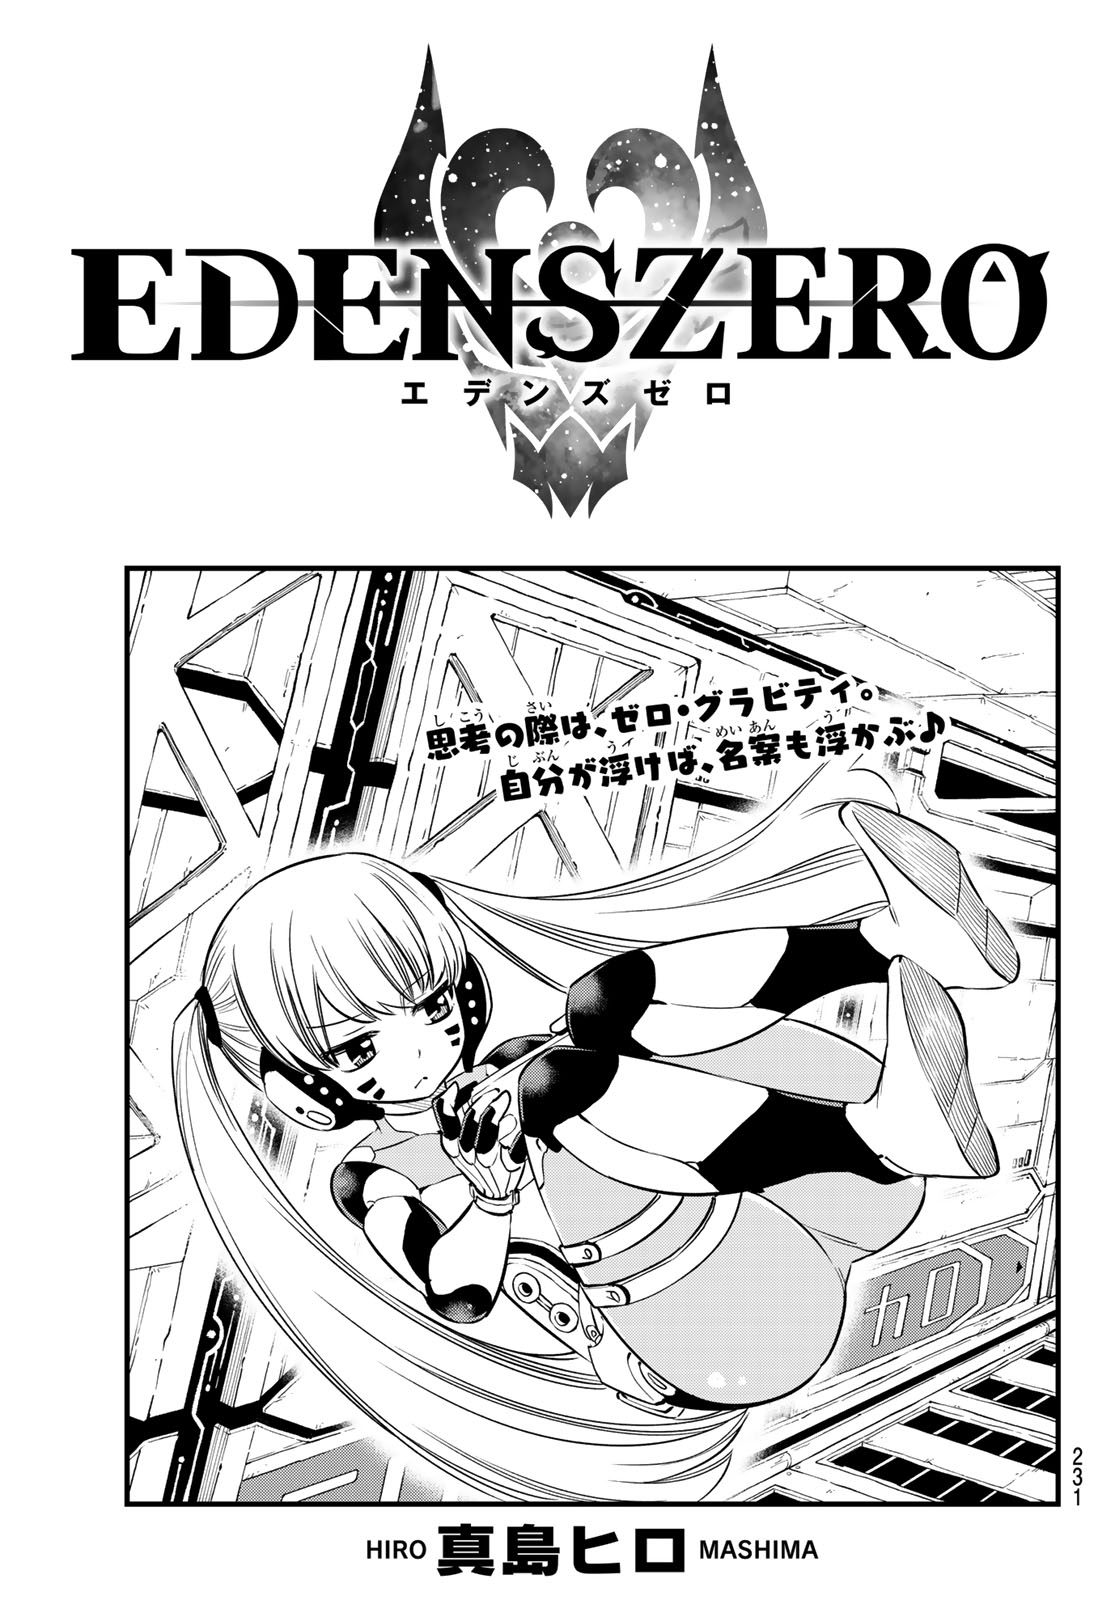 Chapter 77 | Edens Zero Wiki | Fandom